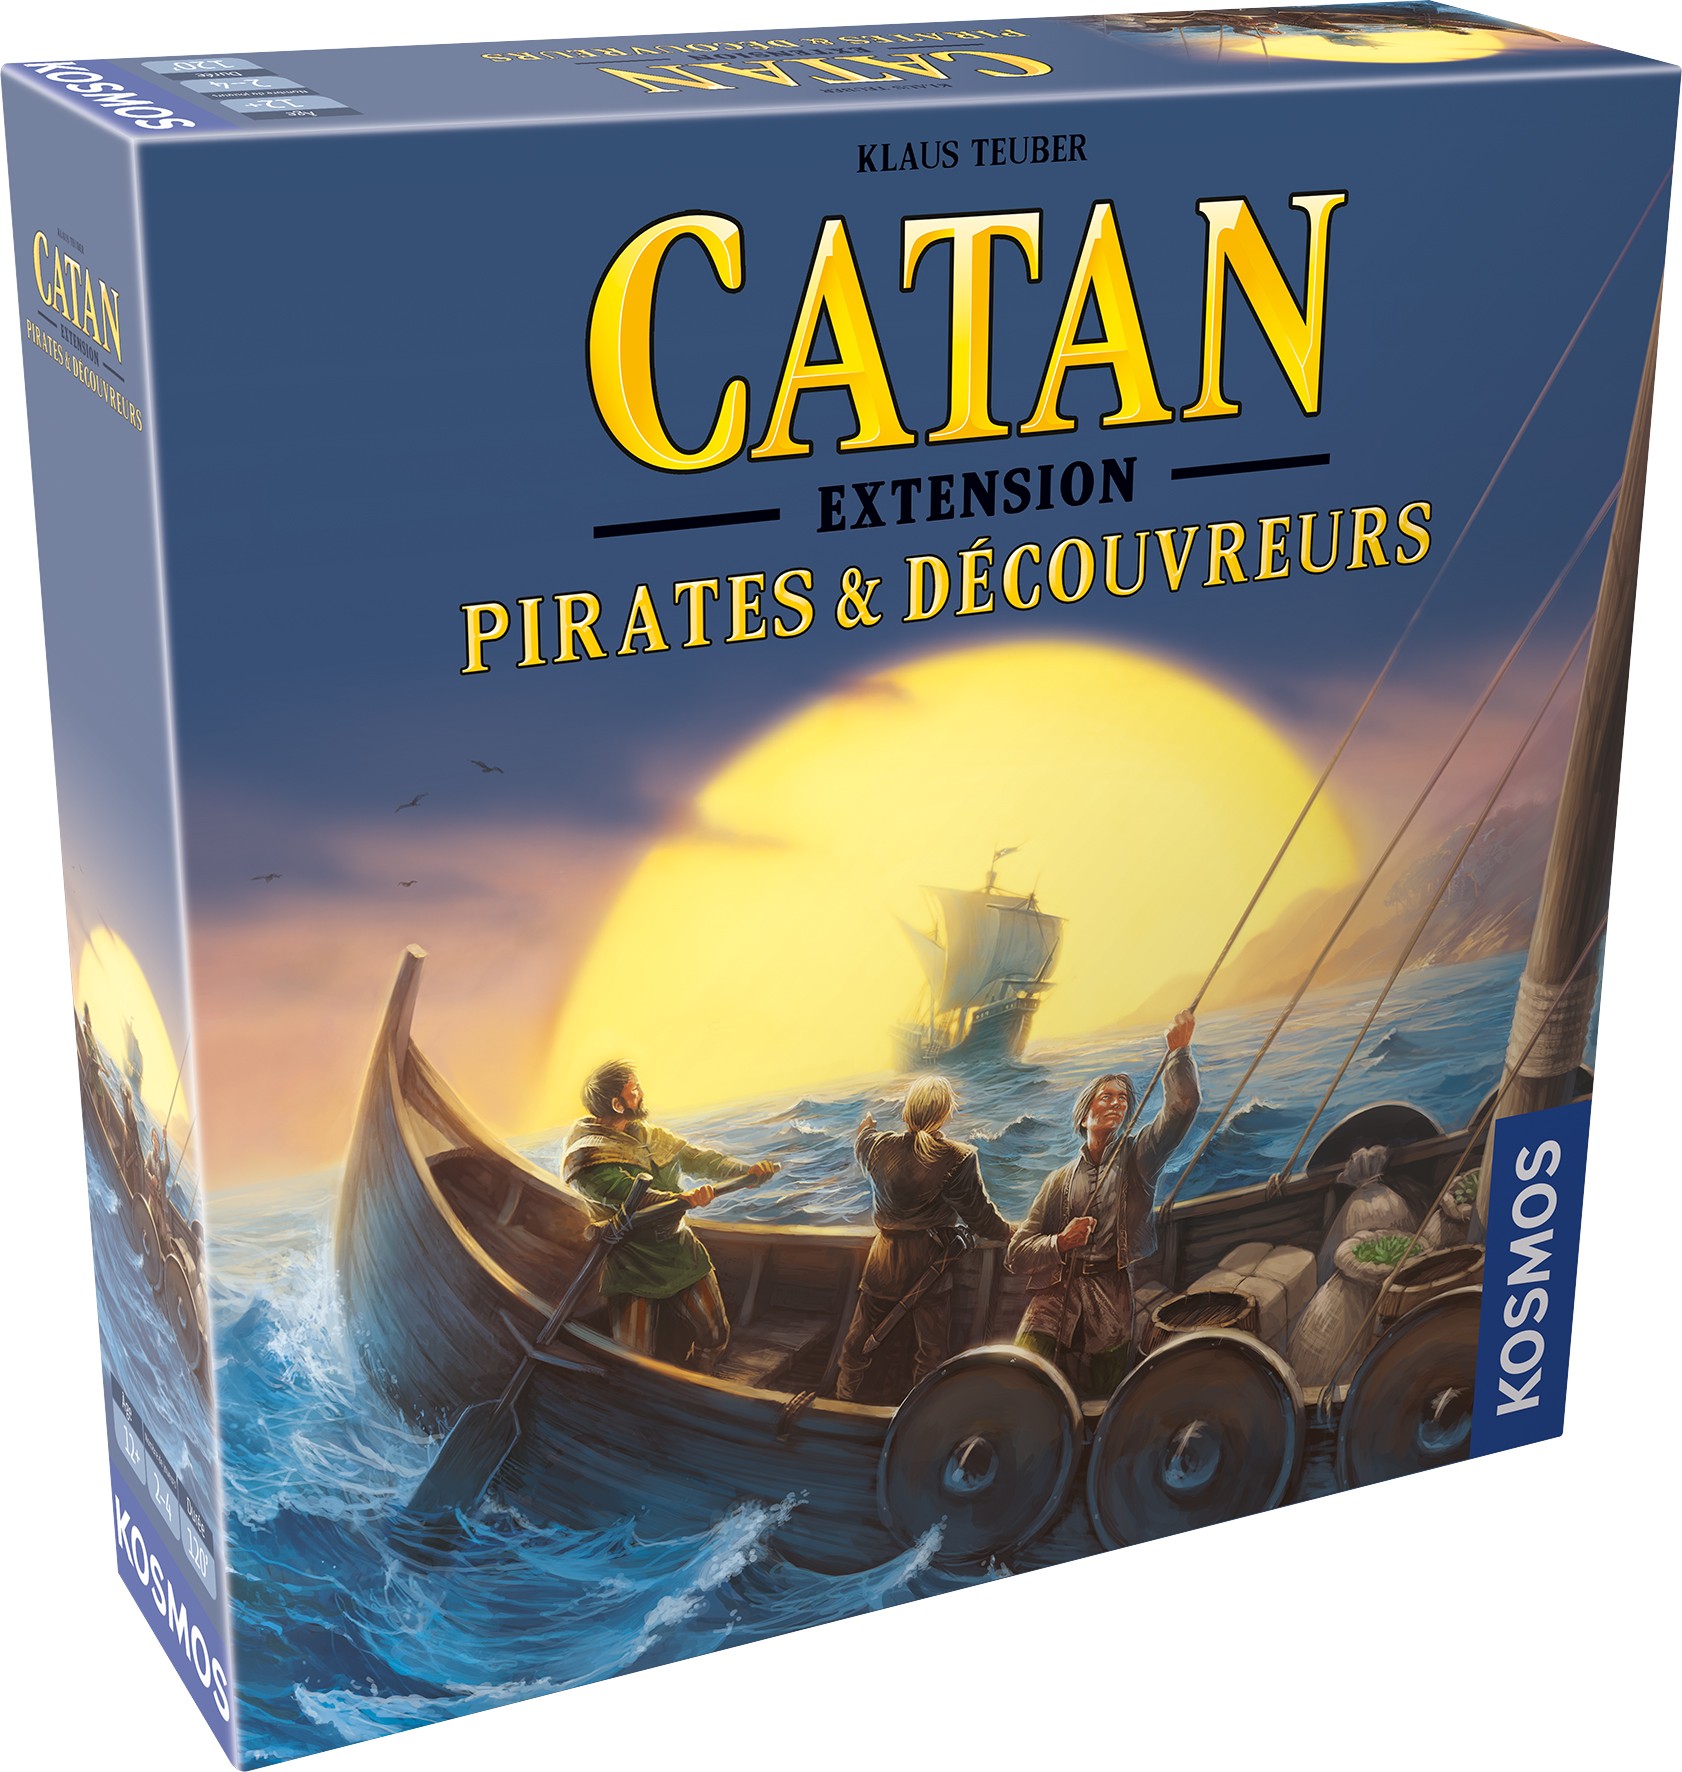 Boîte du jeu Catan: Pirates & Découvreurs (extension) et